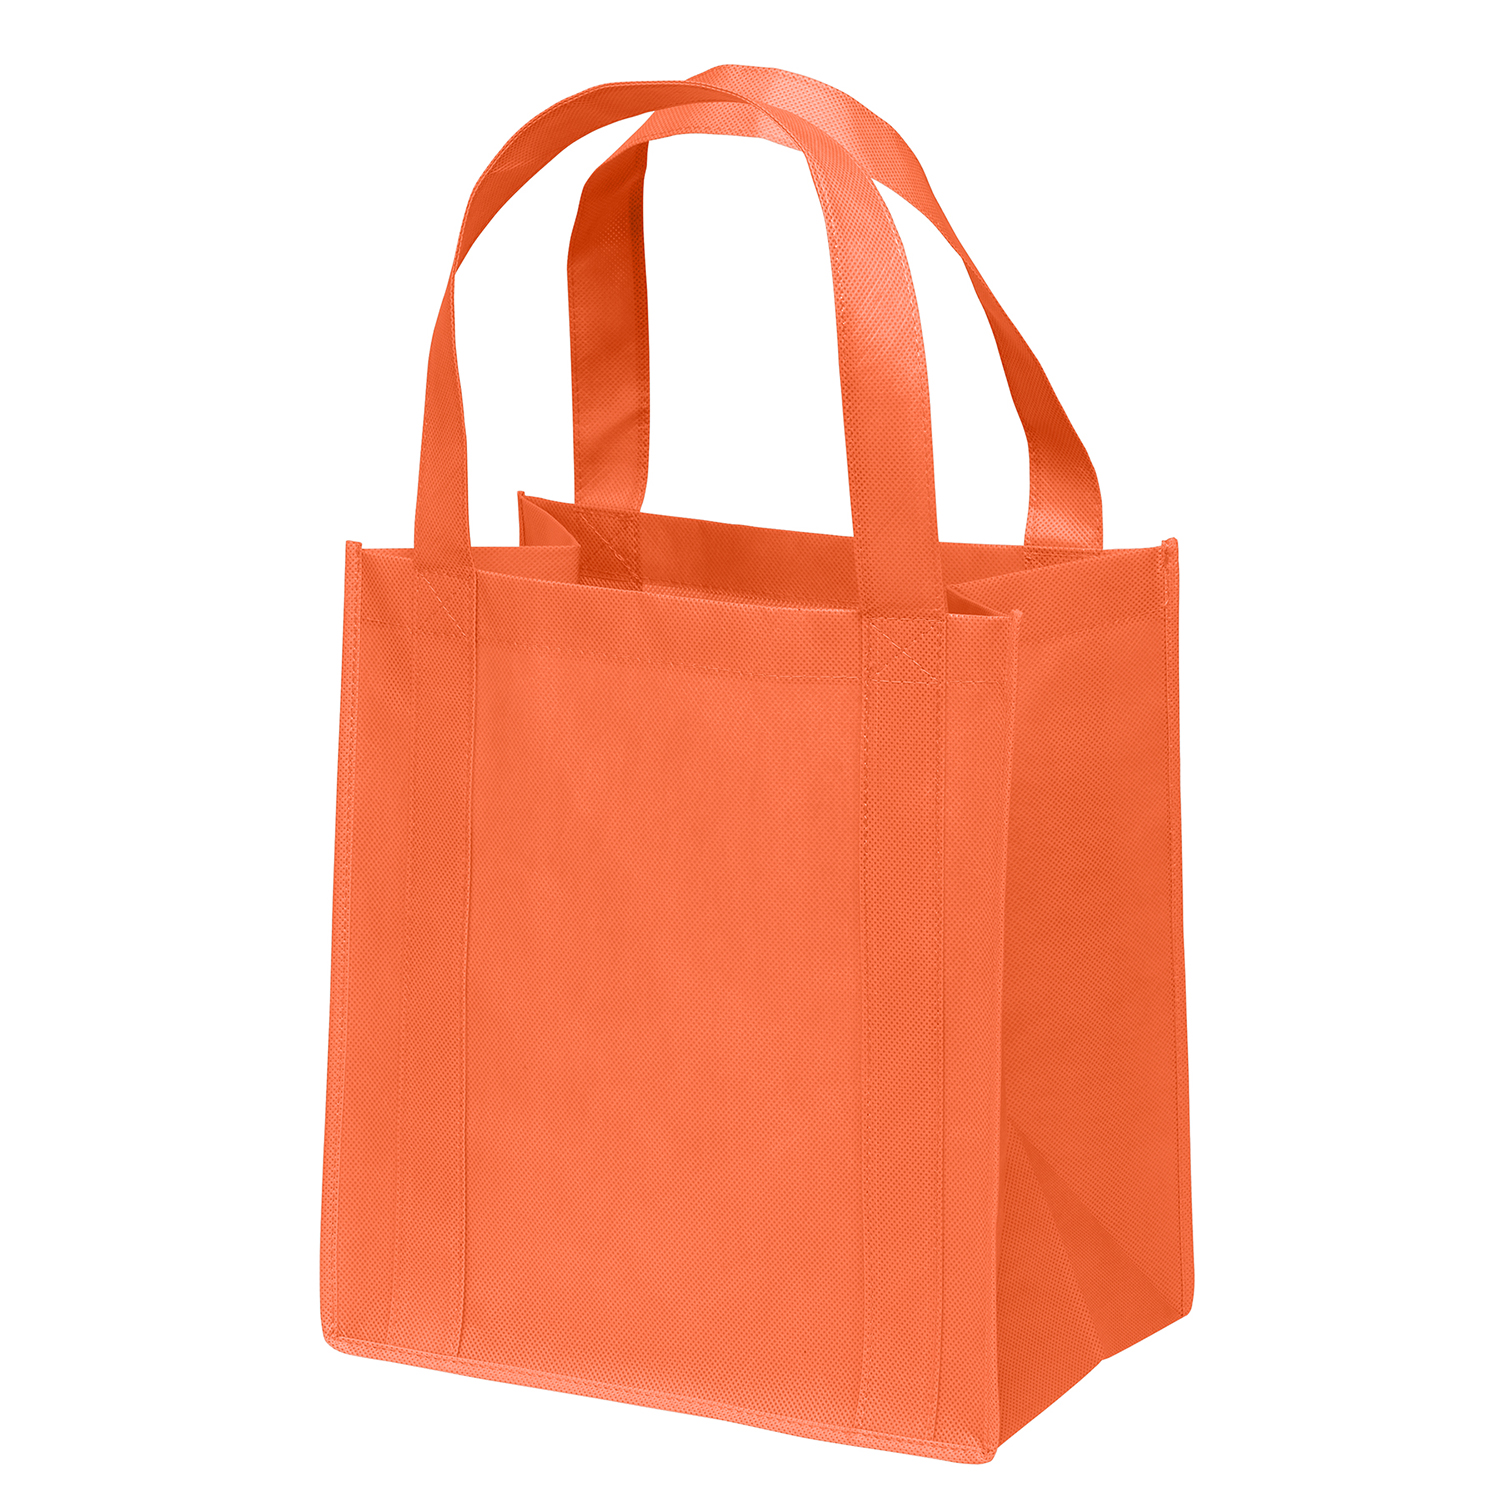 Taupe Lager Belt Bag – Malt and Hops Shop